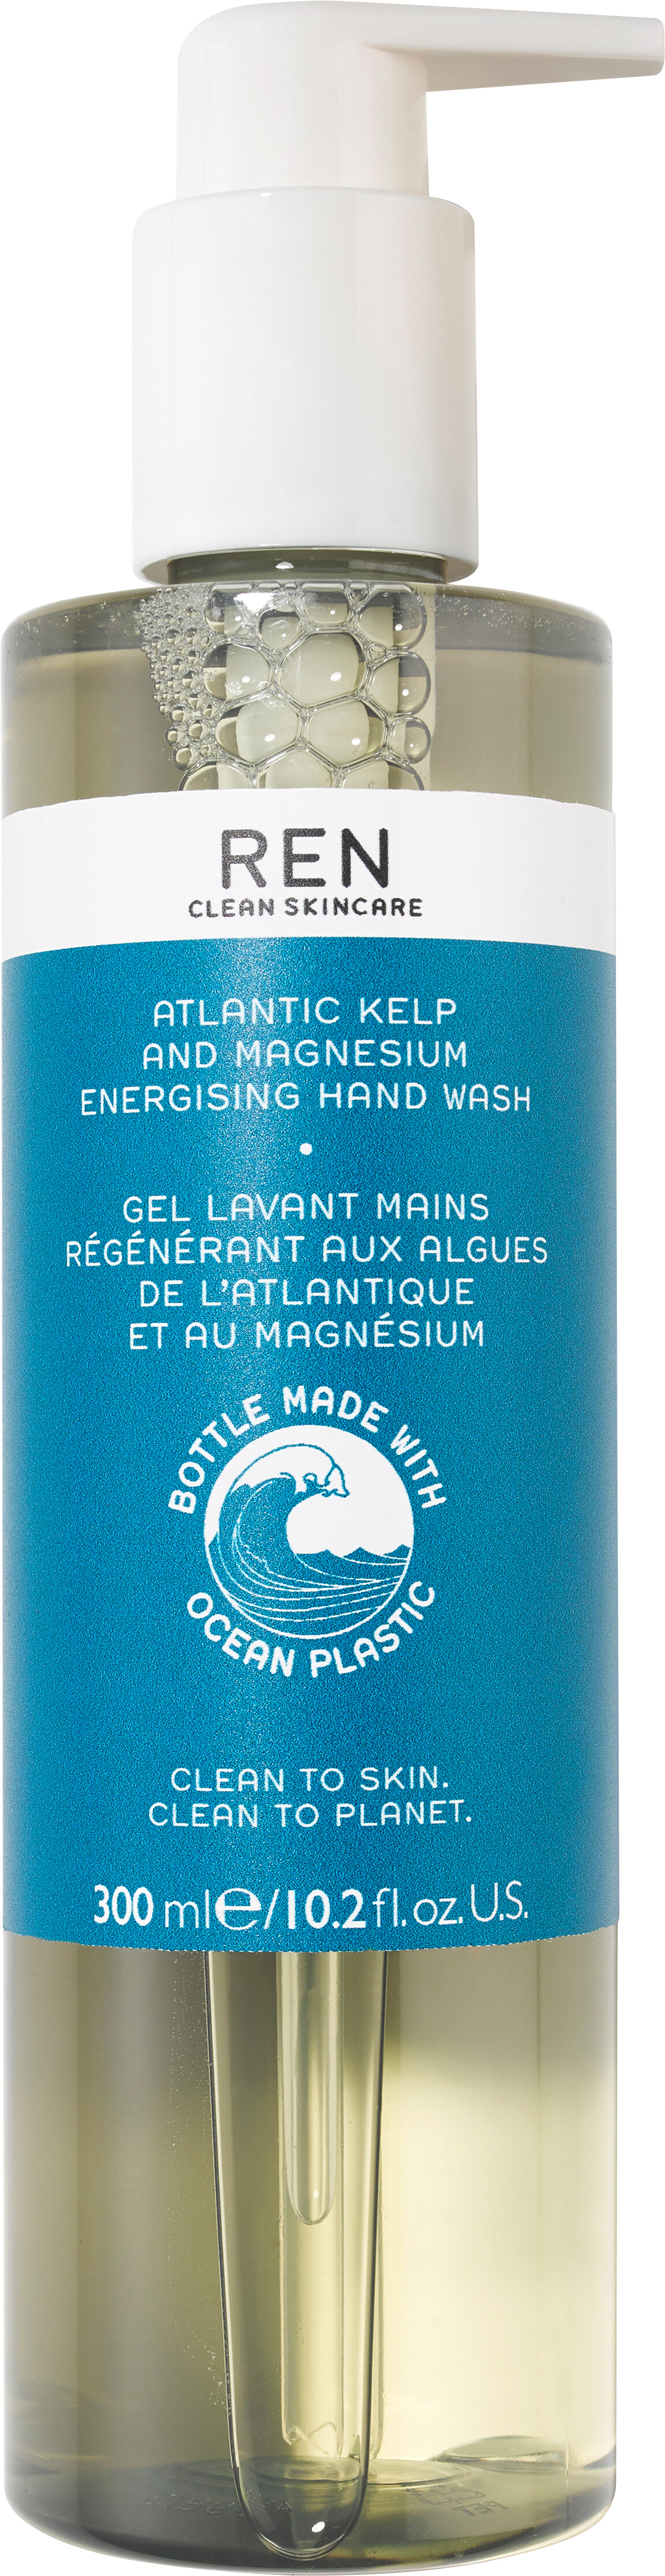 REN Atlantic Kelp And Magnesium Energising Hand Wash 300ml